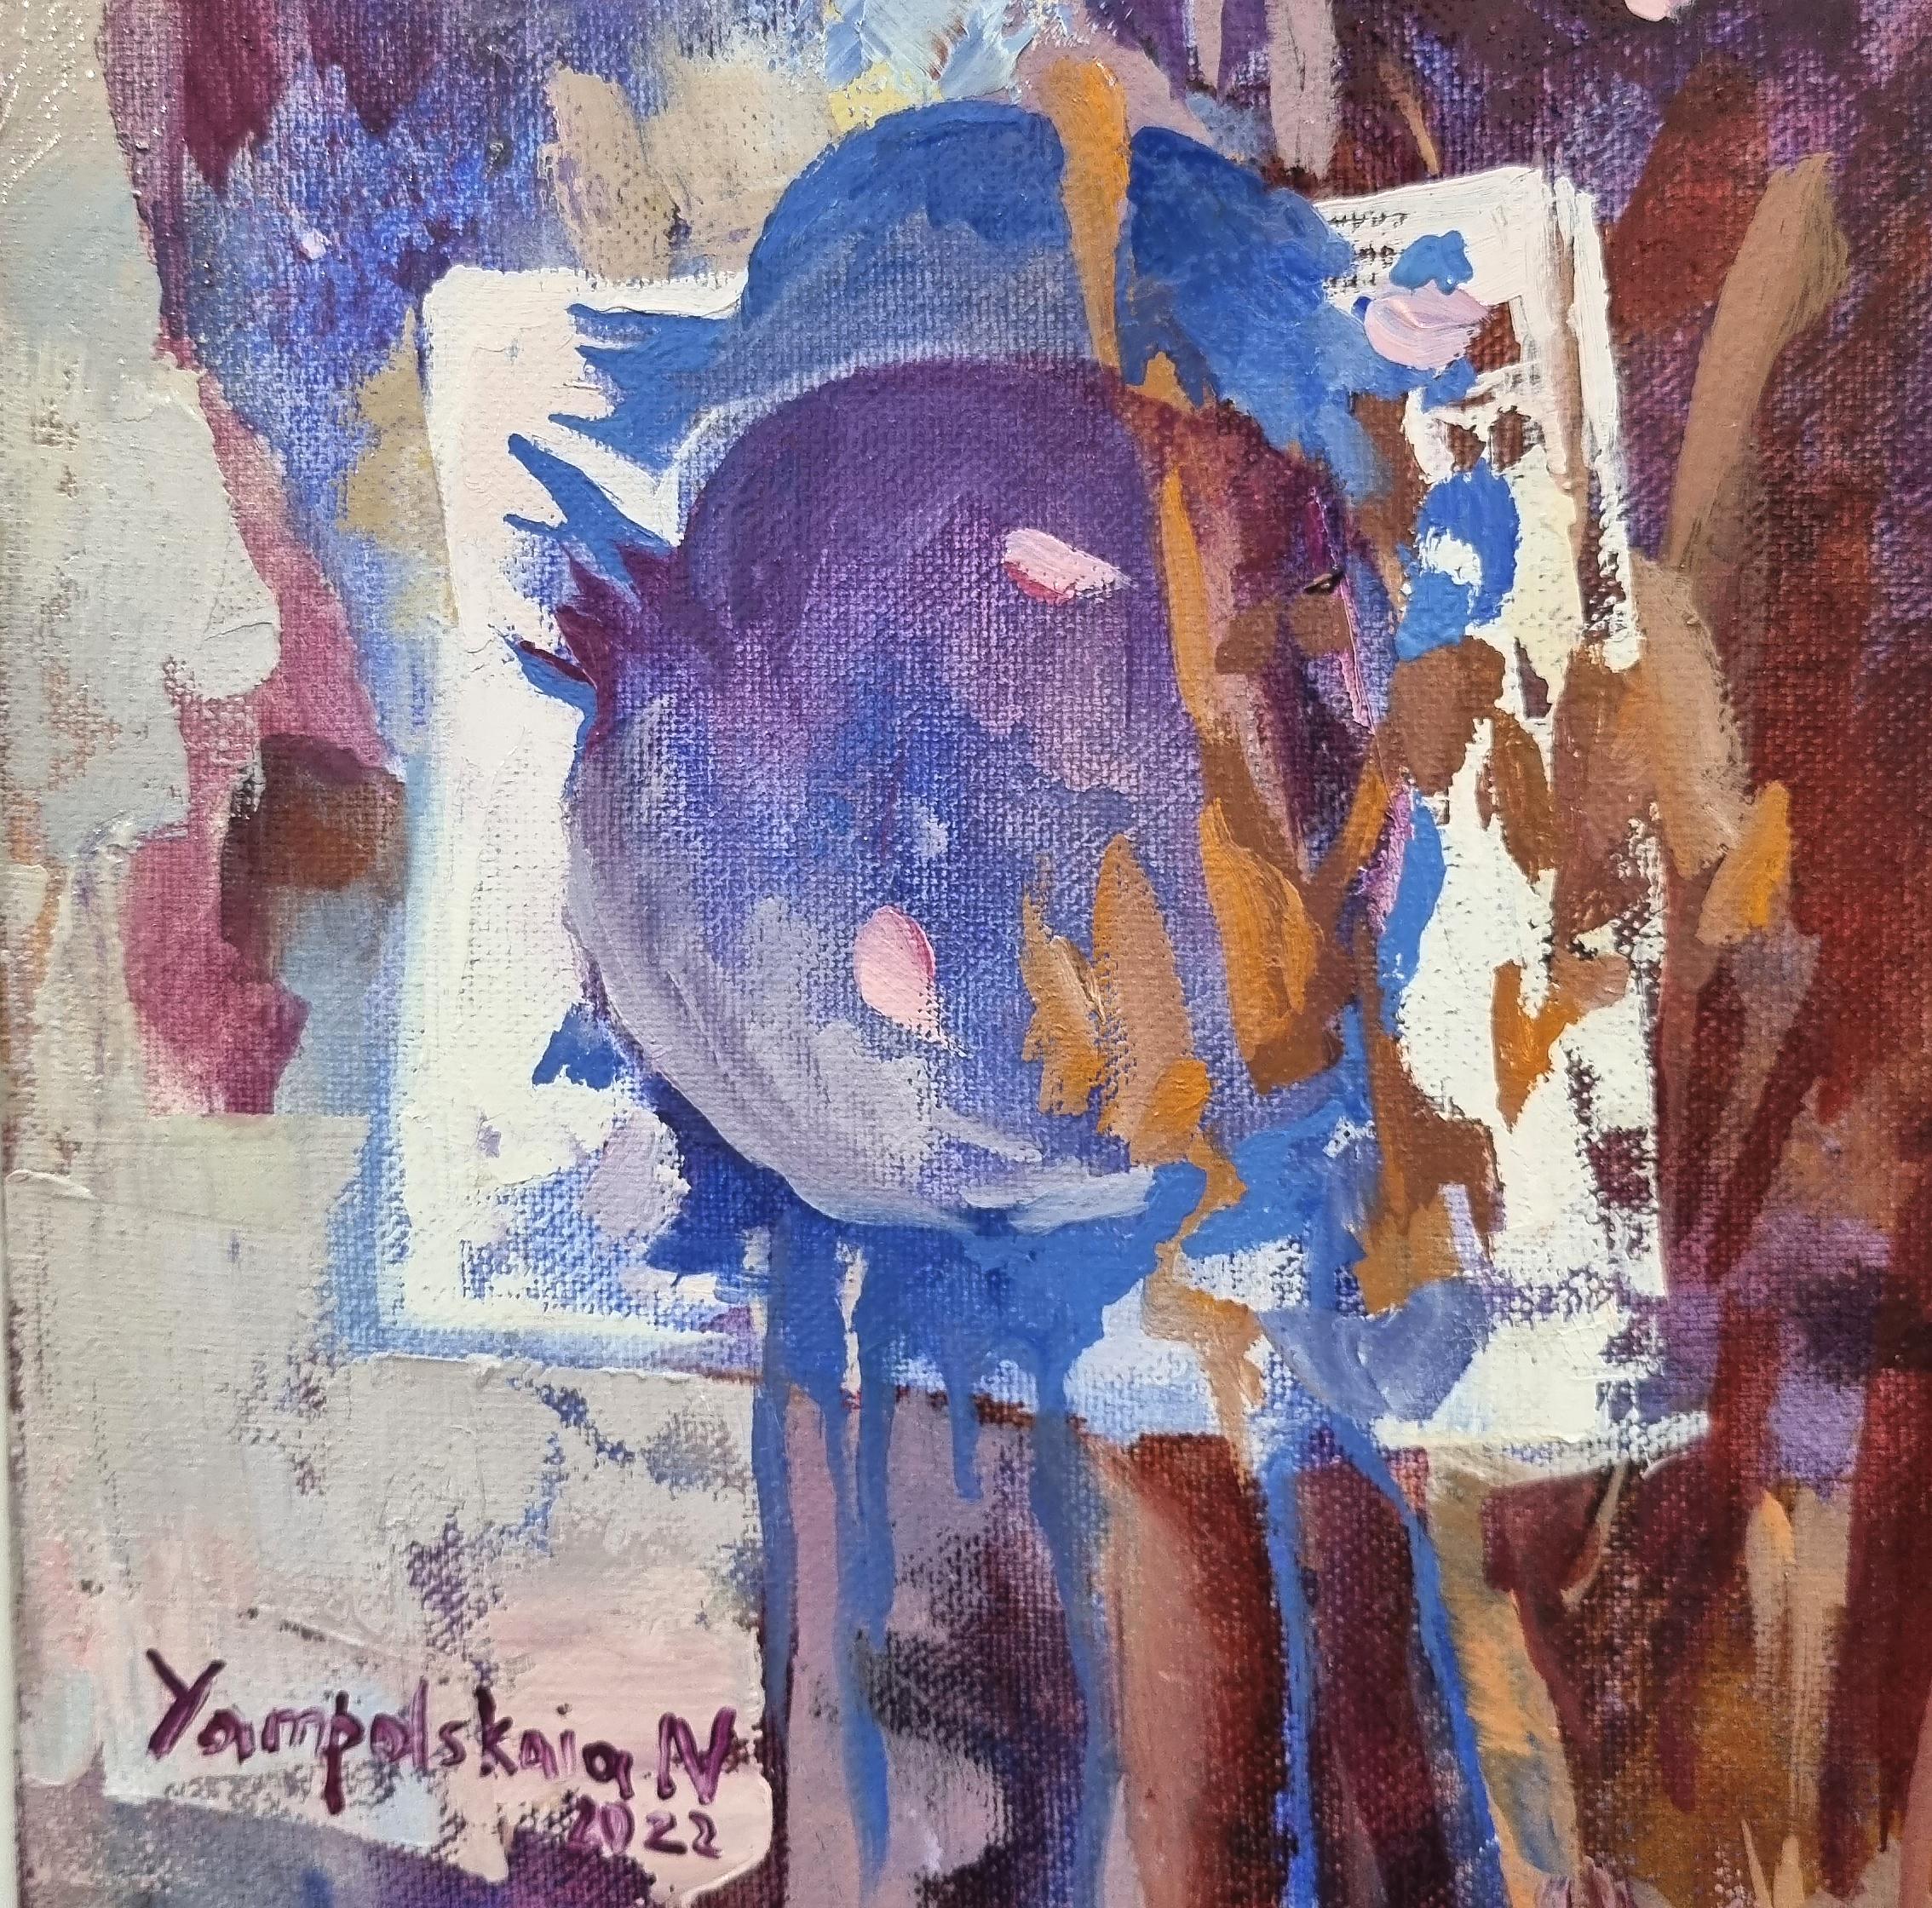 Eve - abstraktes Ölgemälde in Weiß, Grün, Blau, Gelb und Braun – Painting von Natalia Yampolskaya